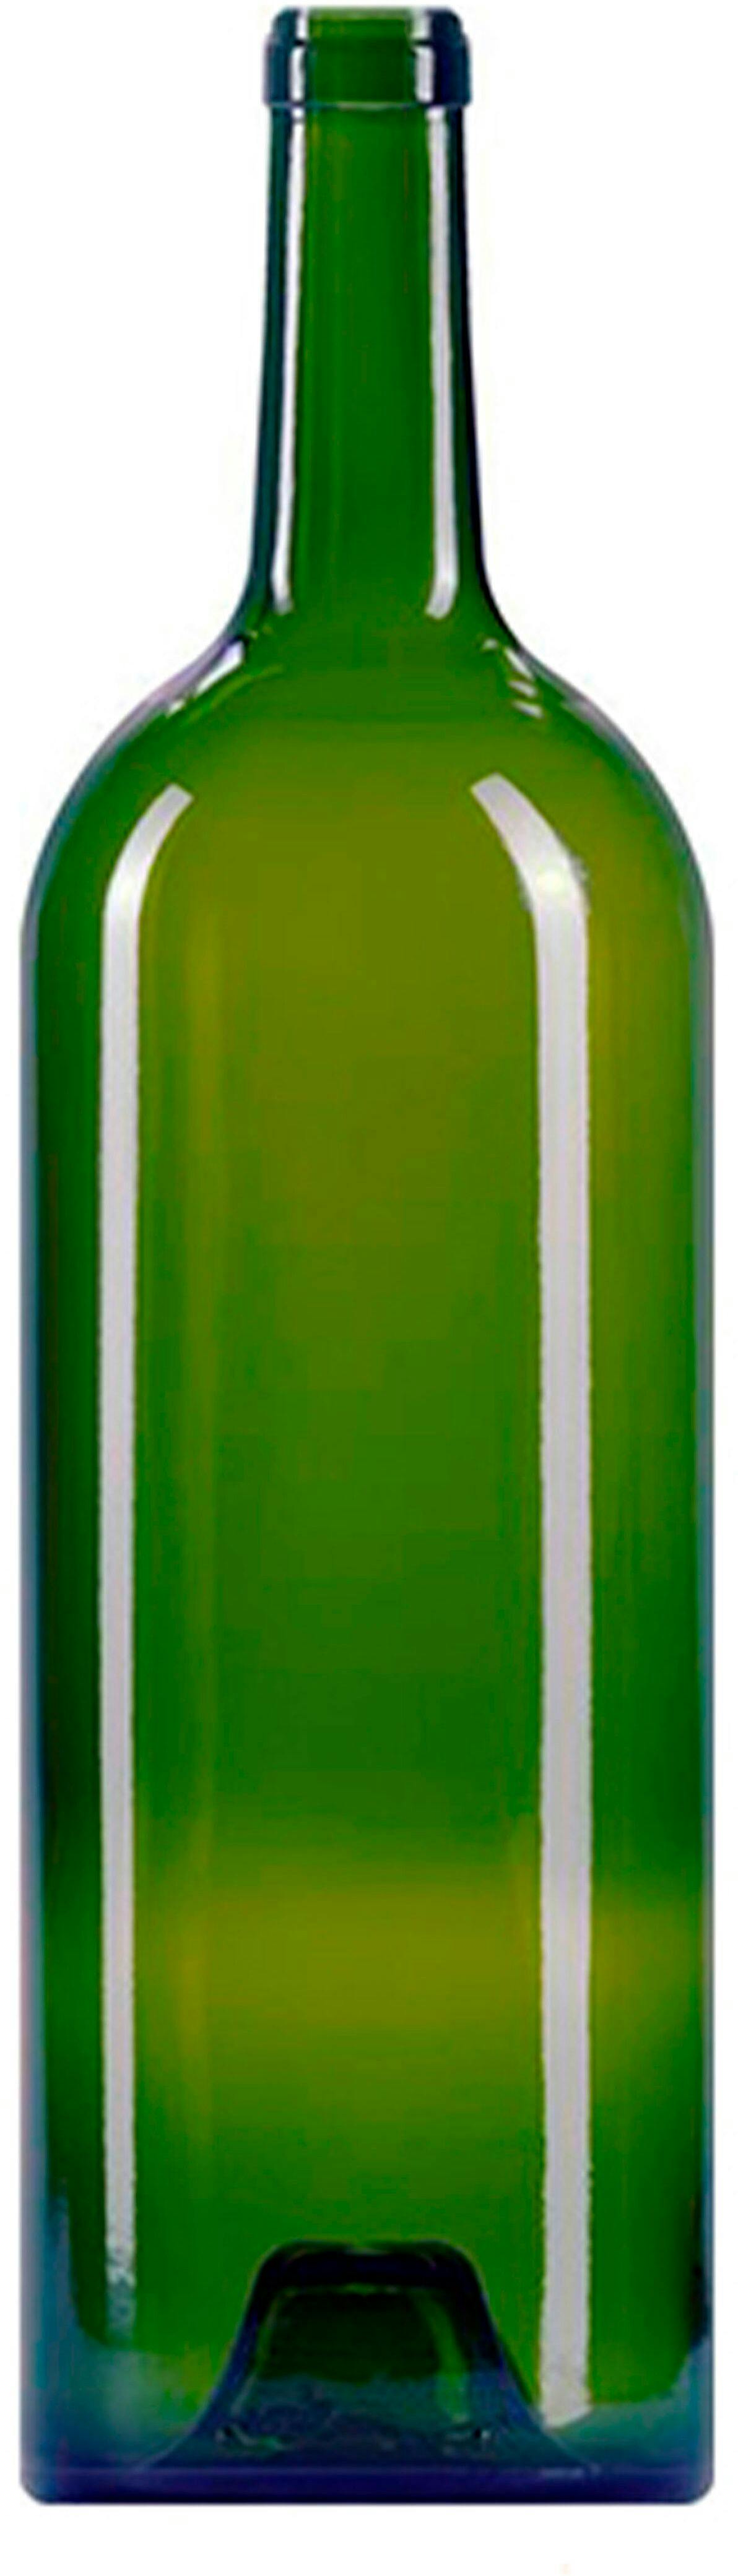 Botella BORDELESA  GRAND VIN 1500 ml BG-corcho